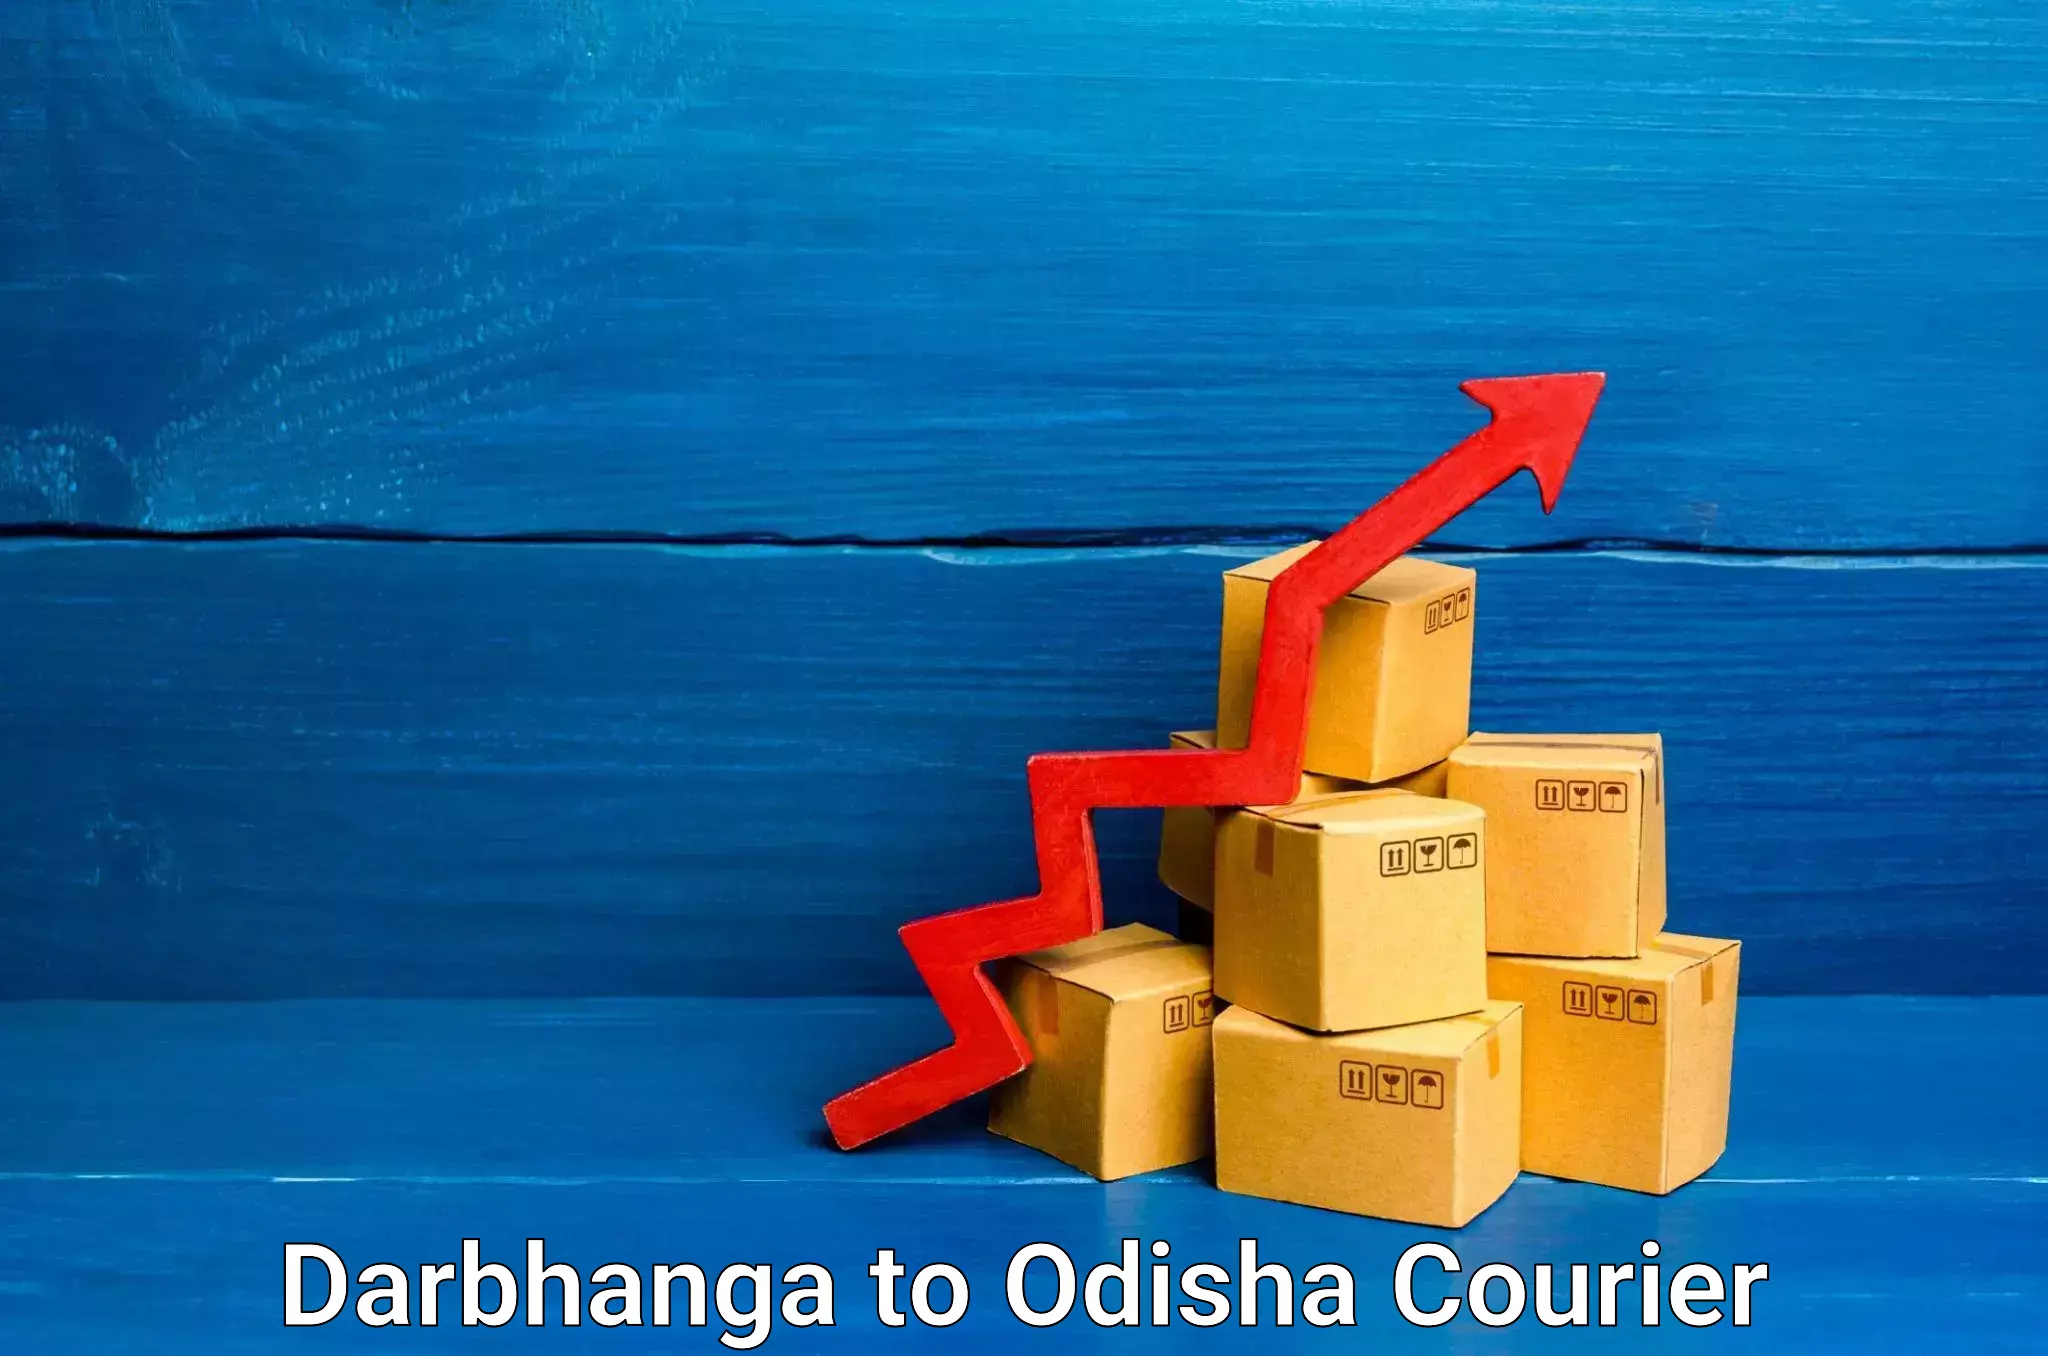 Furniture moving experts Darbhanga to Odisha